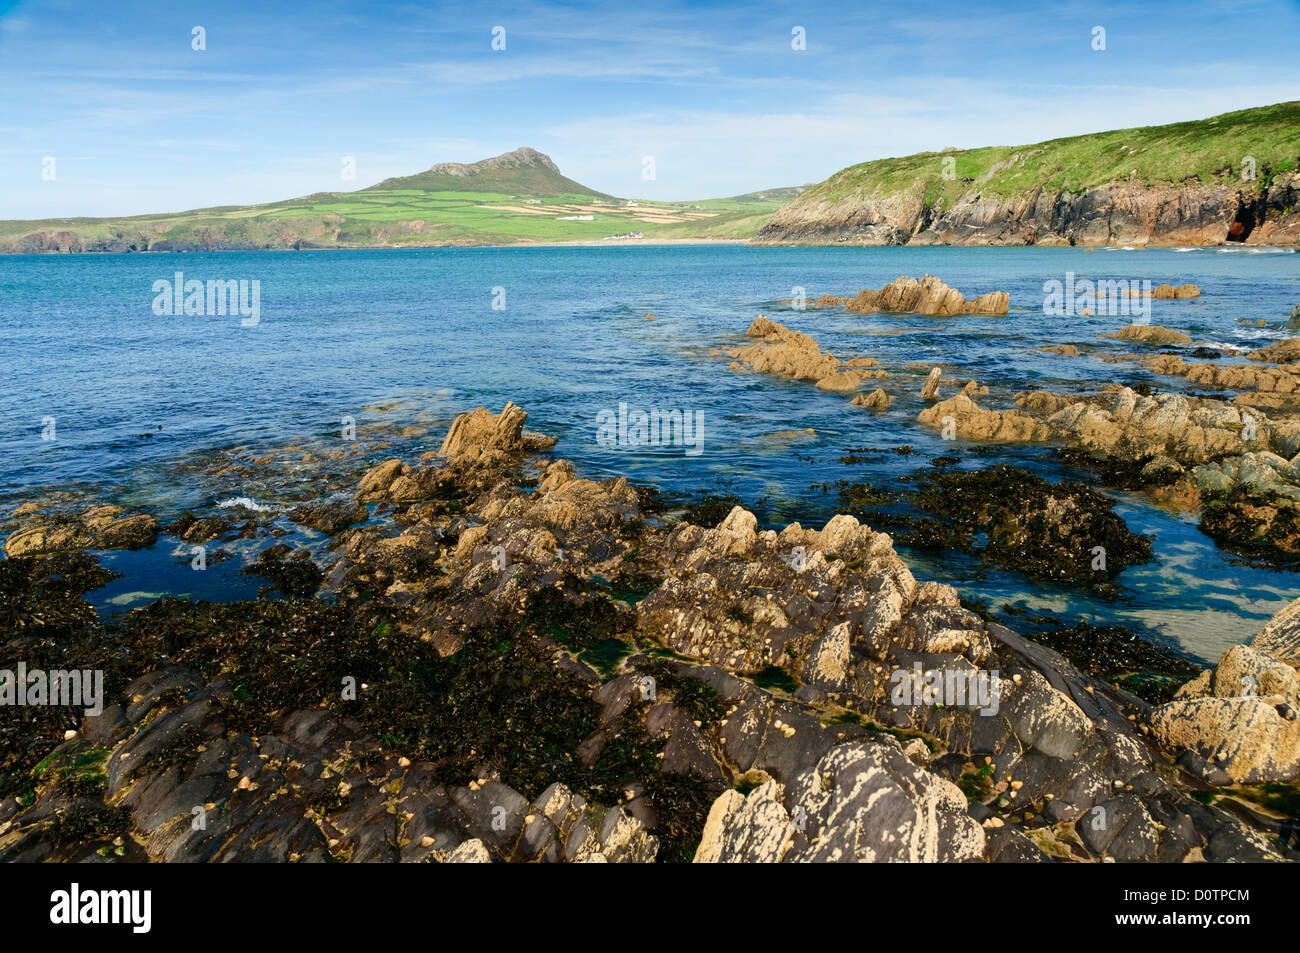 Une vue d'une partie rocheuse de la plage de Porthsele Pencarnan à pembrokeshire, dans l'ouest du pays de Galles avec Carn Llidi en arrière-plan. Banque D'Images